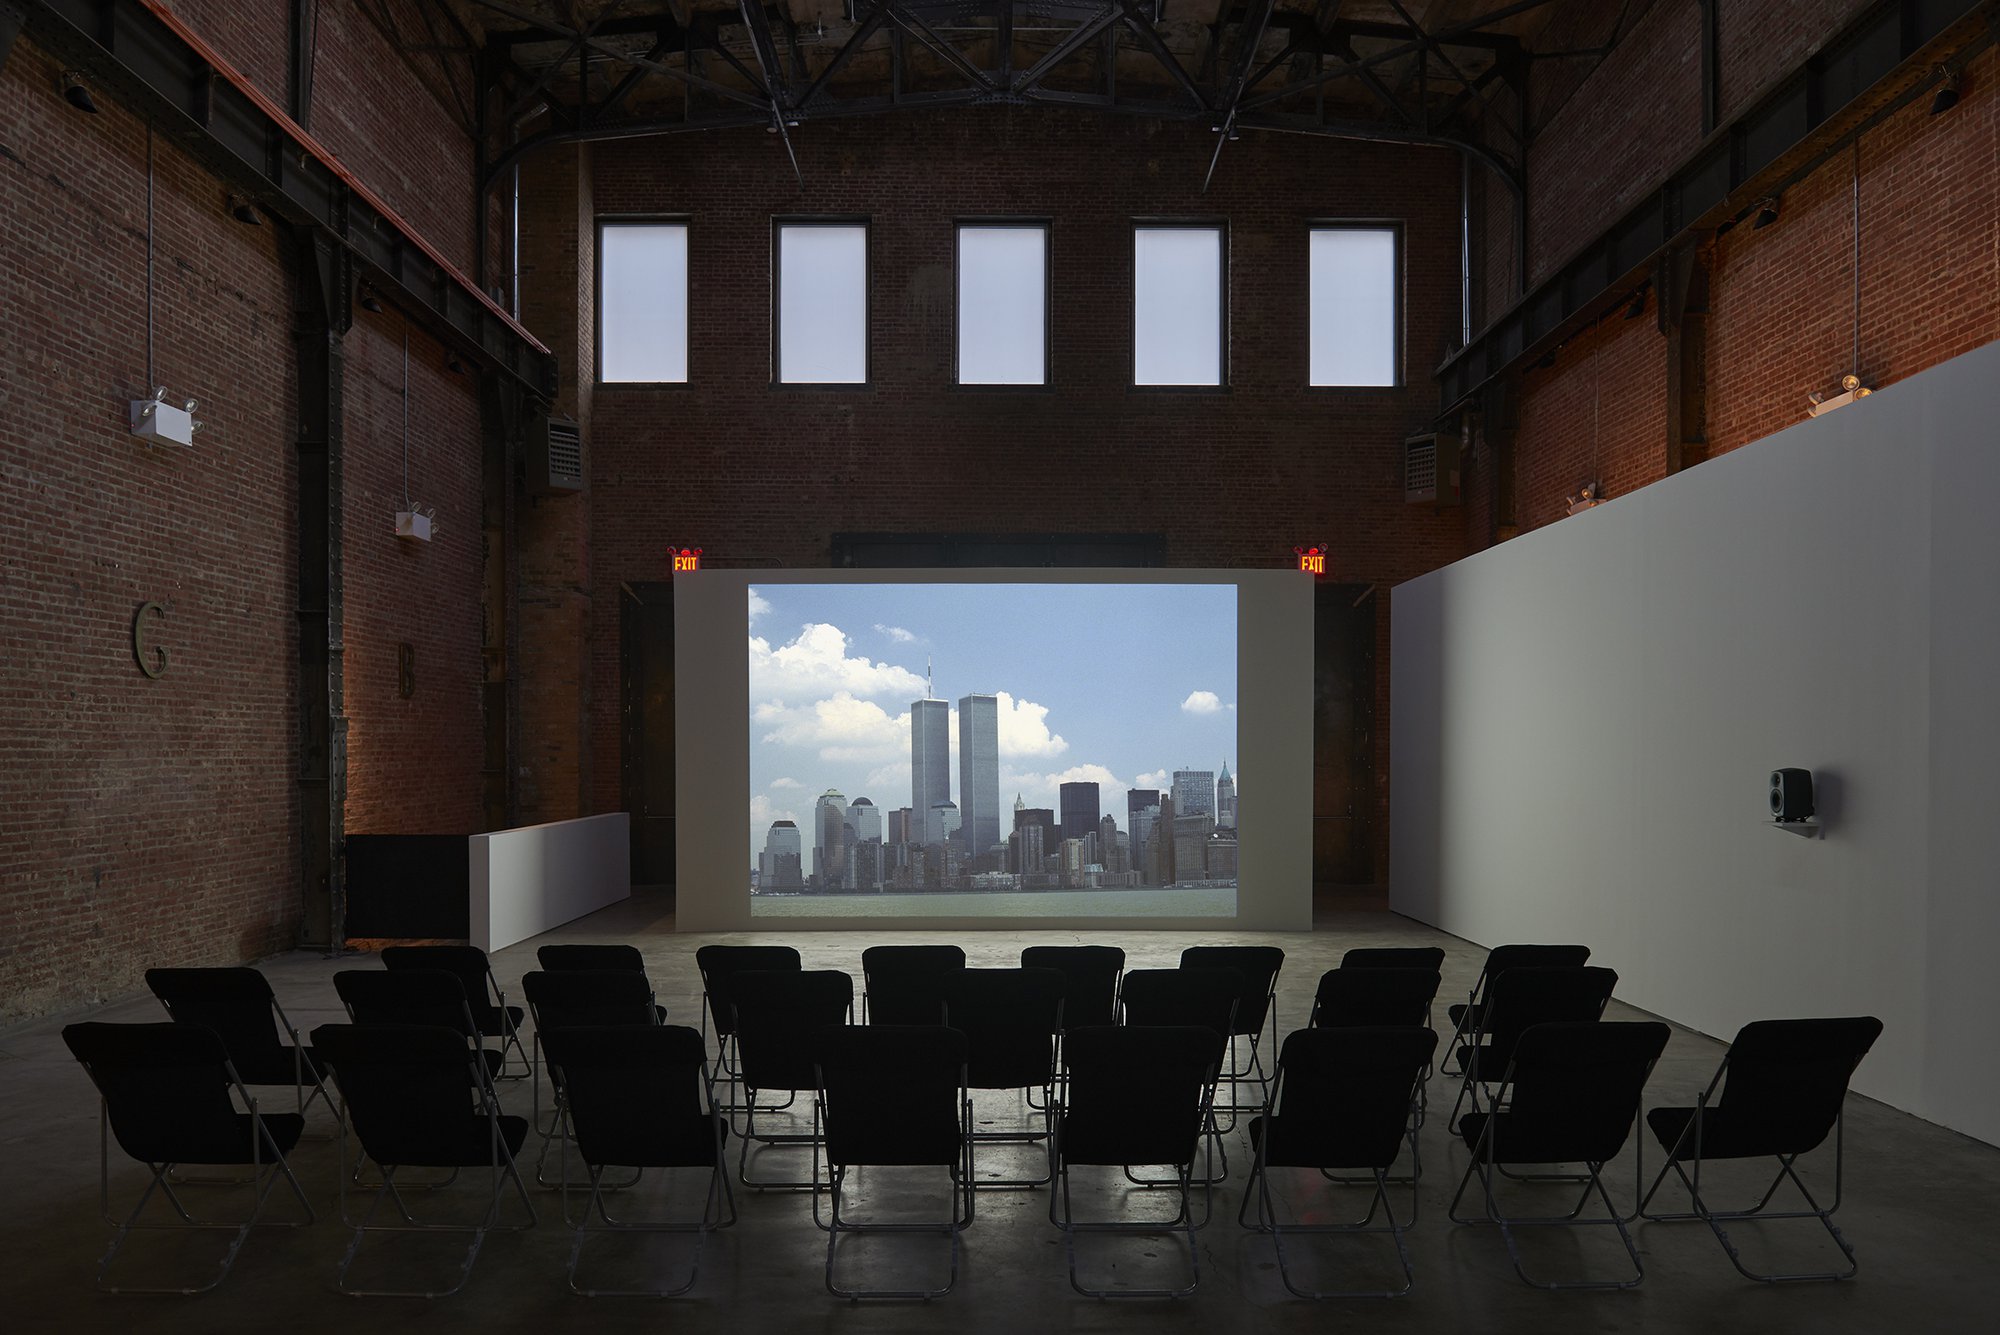 Installation view, Banu Cennetoğlu, Banu Cennetoğlu, SculptureCenter, New York, 2019